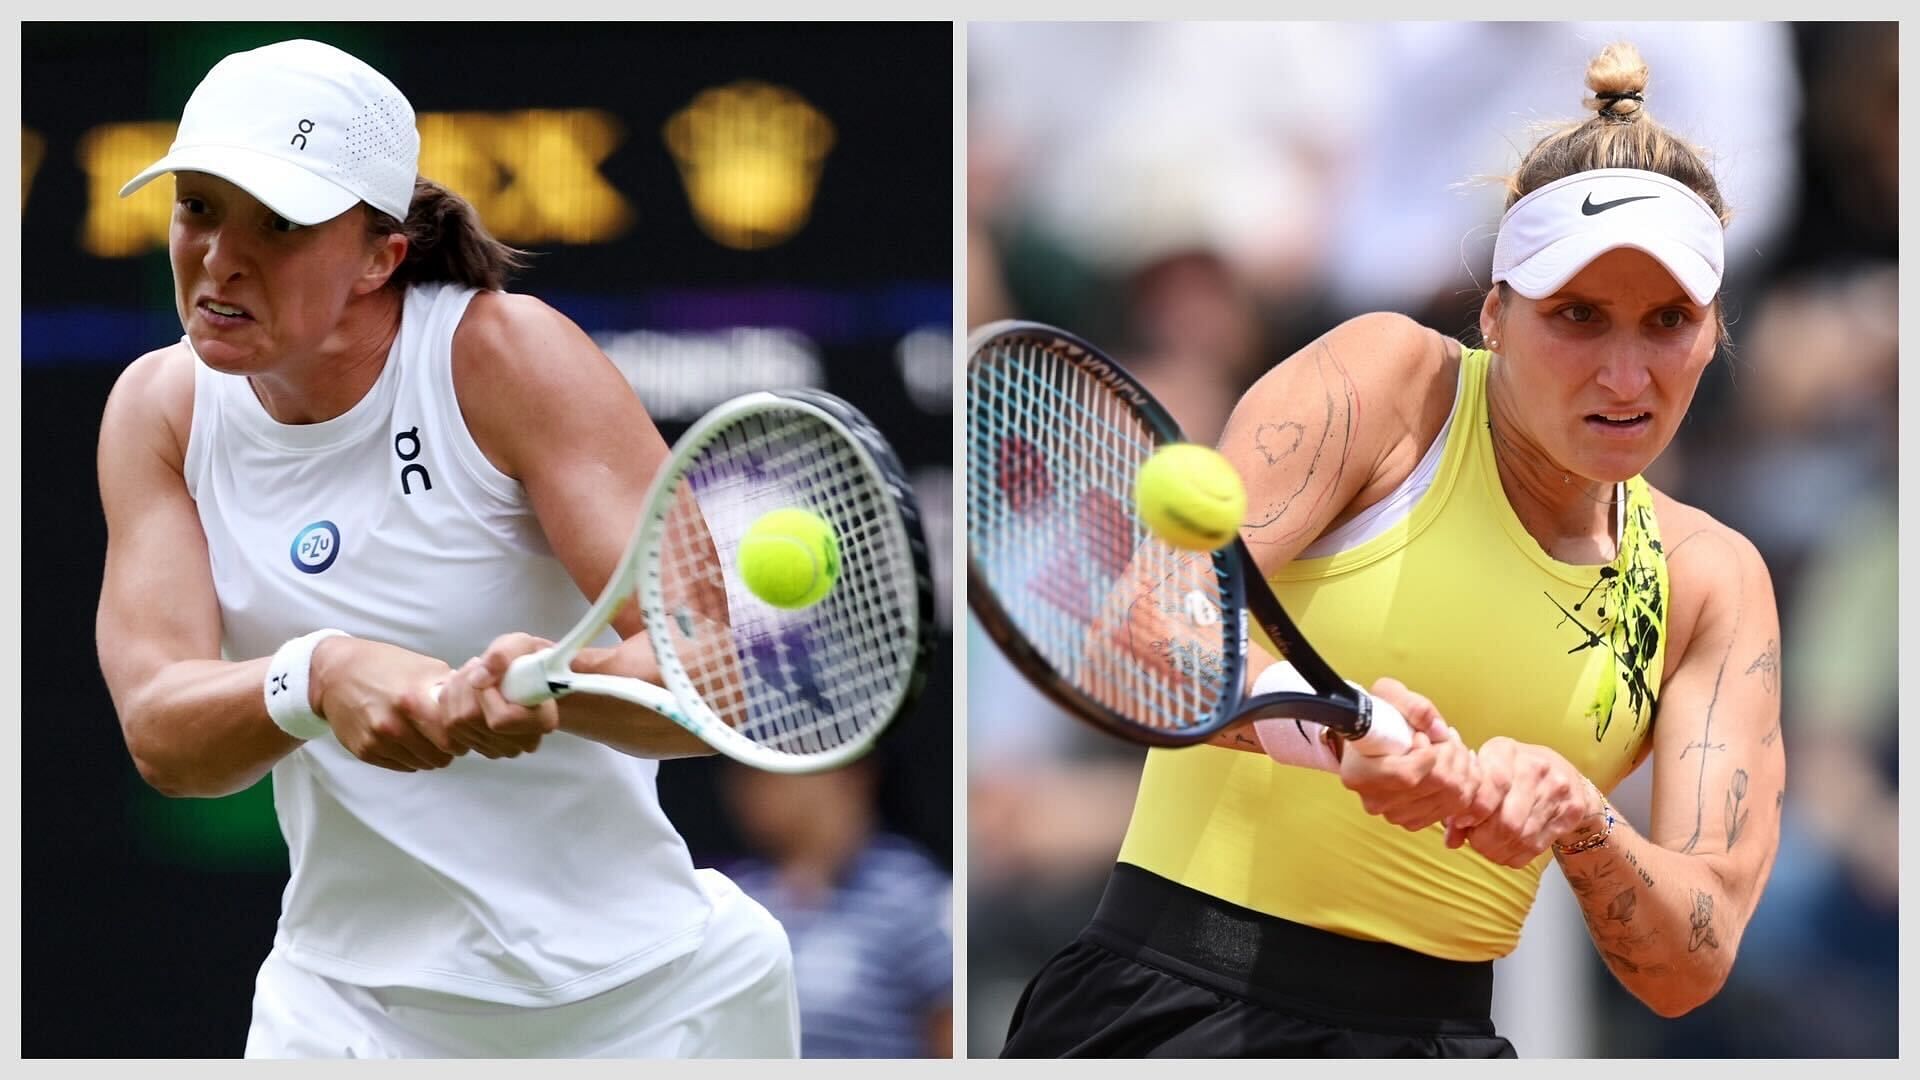 Iga Swiatek vs Marketa Vondrousova is one of the round-robin matches at the 2023 WTA Finals.